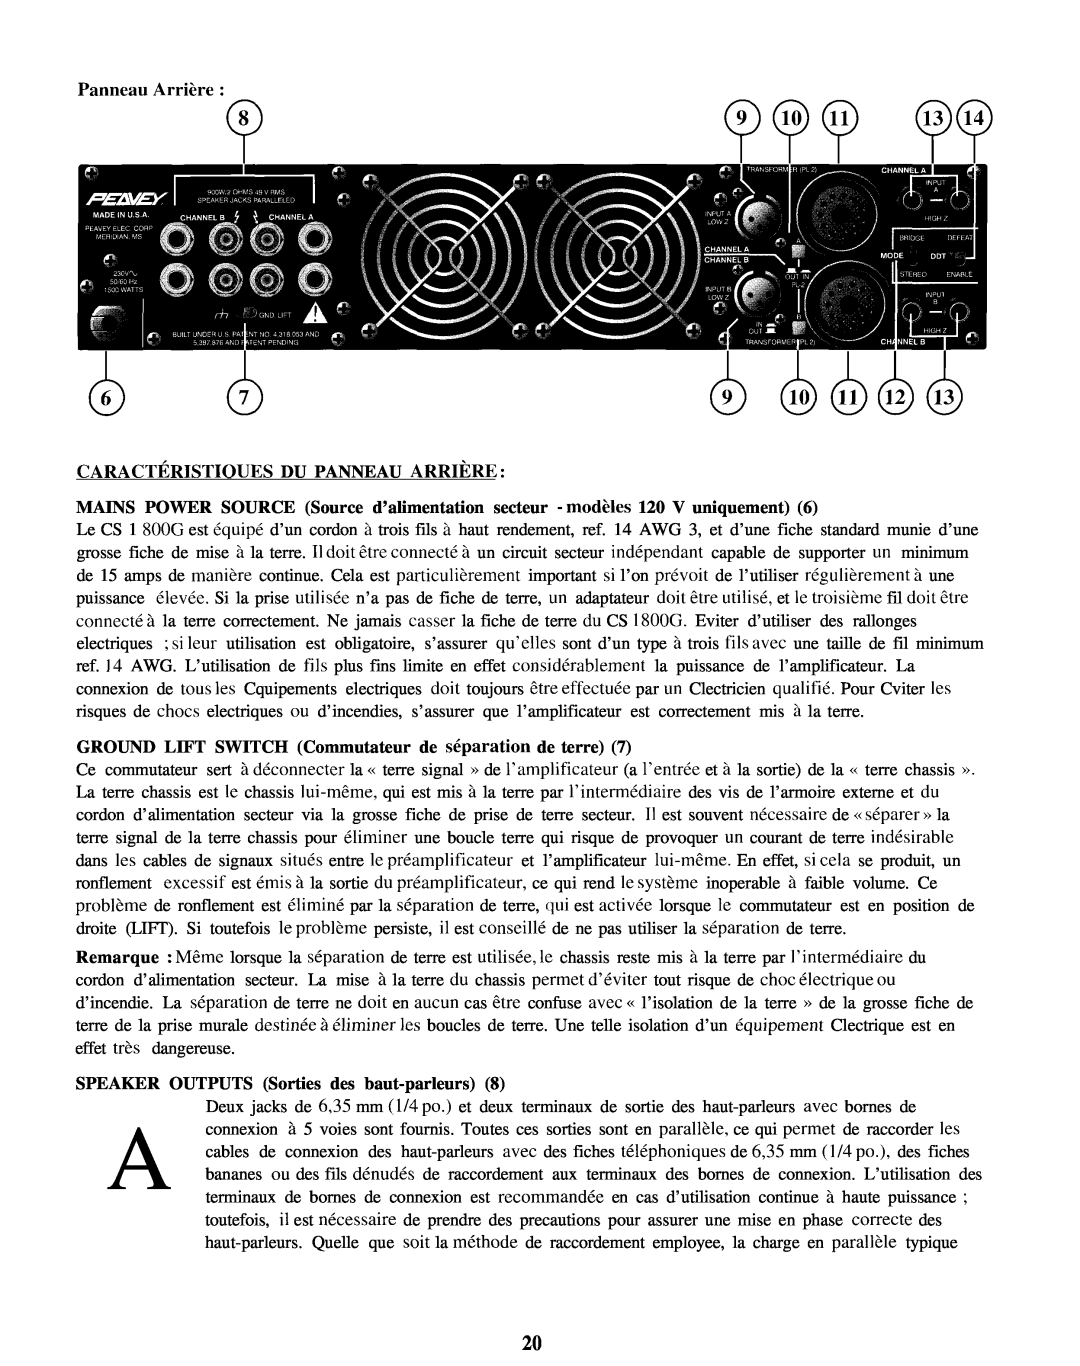 Peavey CS 1800G manual CARACTtiRISTIOUES DU PANNEAU ARRItiRE, SPEAKER OUTPUTS Sorties des baut-parleurs8 